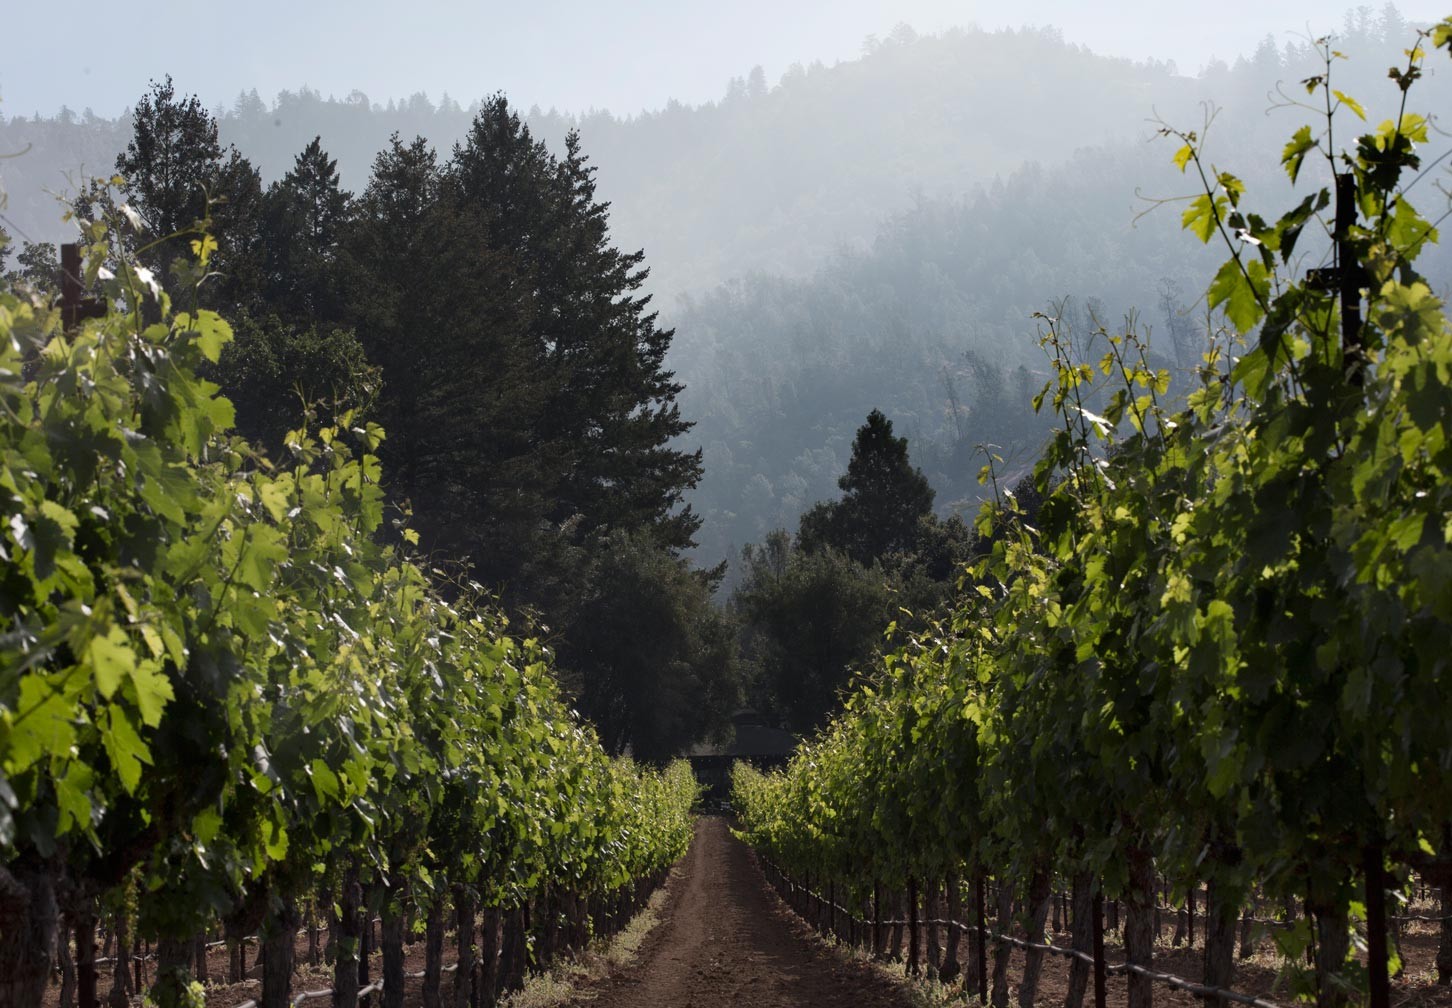 vineyard rows